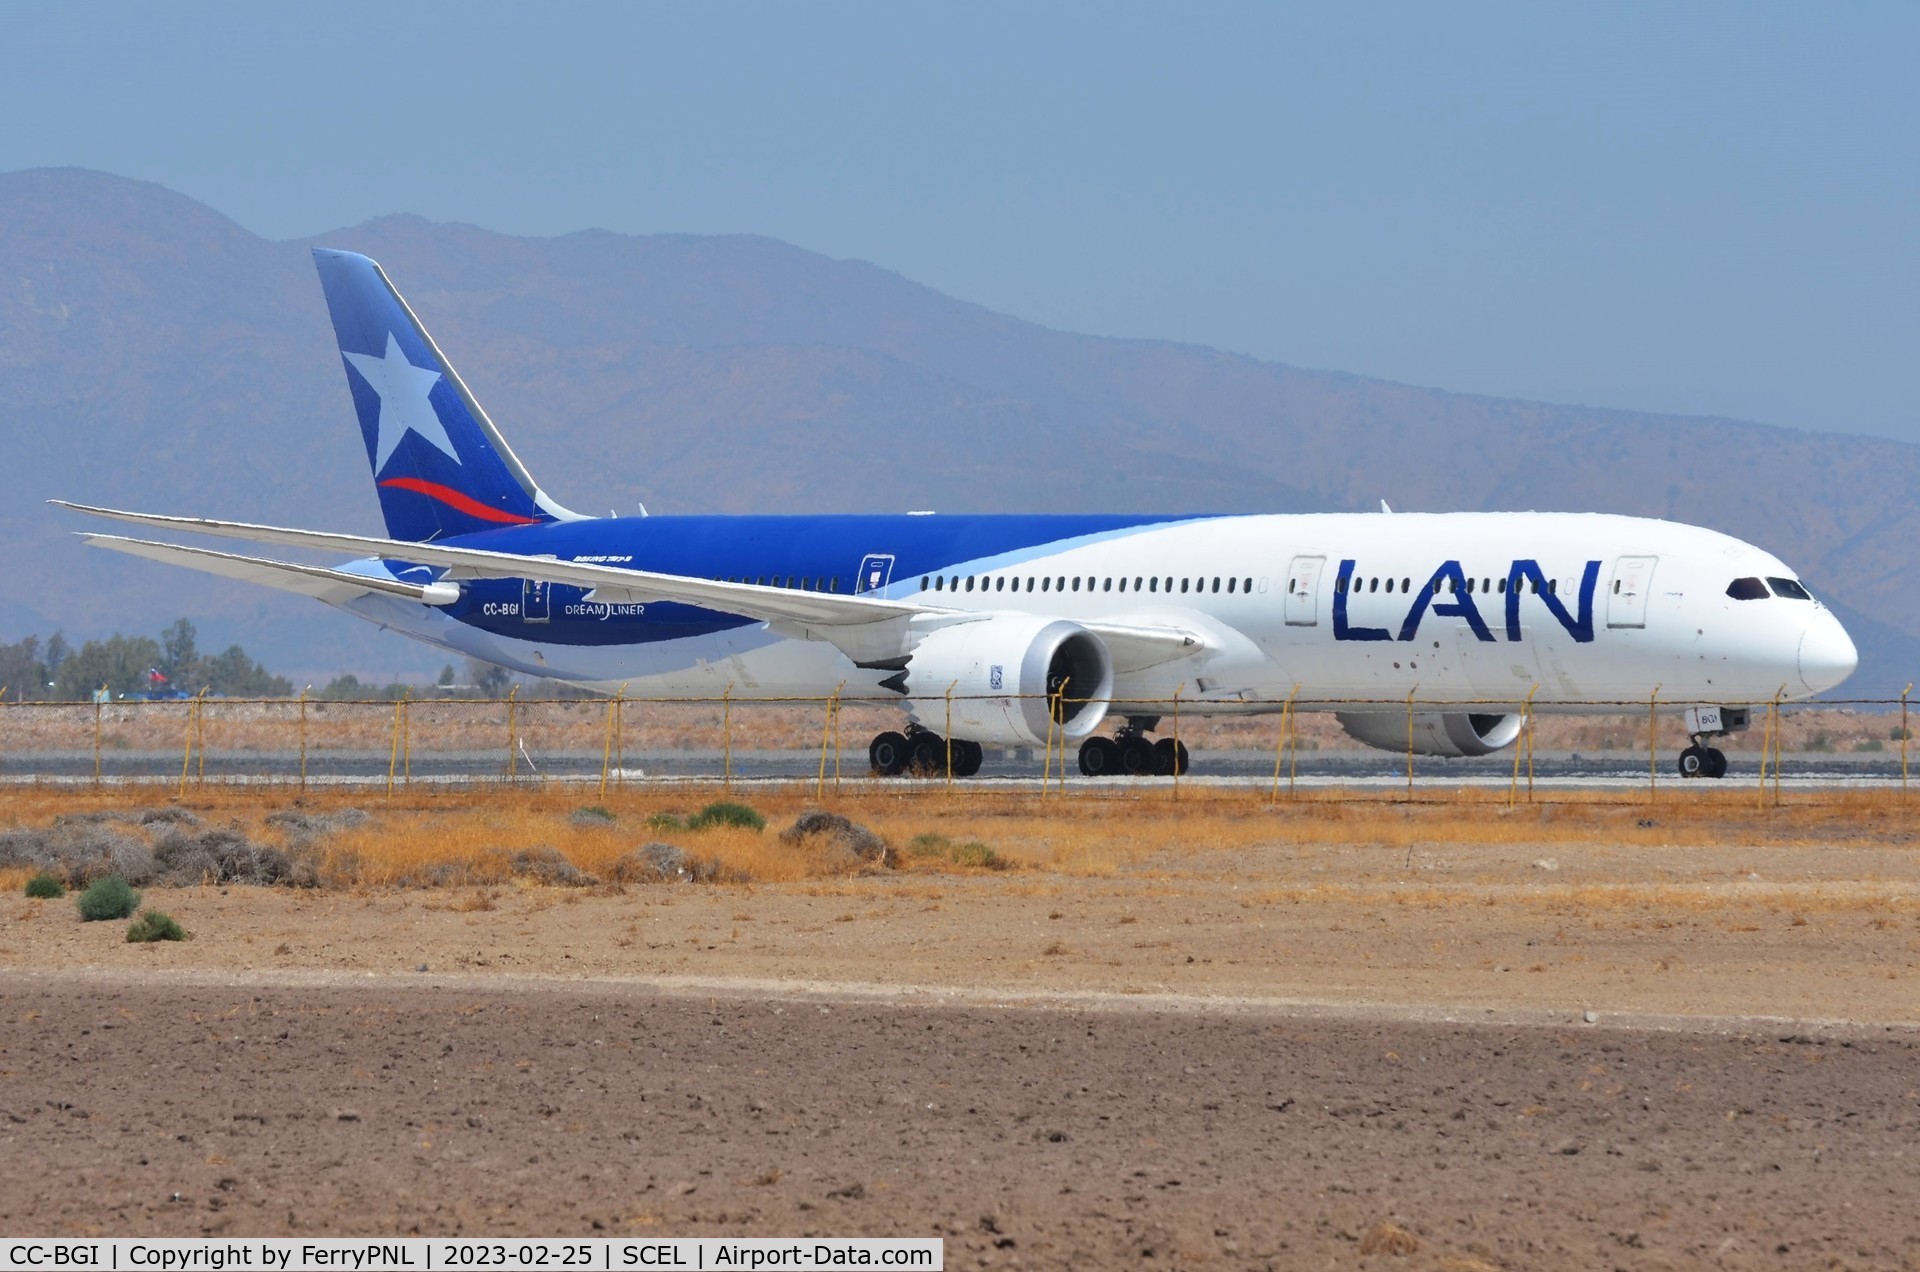 CC-BGI, 2016 Boeing 787-9 Dreamliner Dreamliner C/N 38764, Latam B789 still in LAN cs baking in the Chilean sun